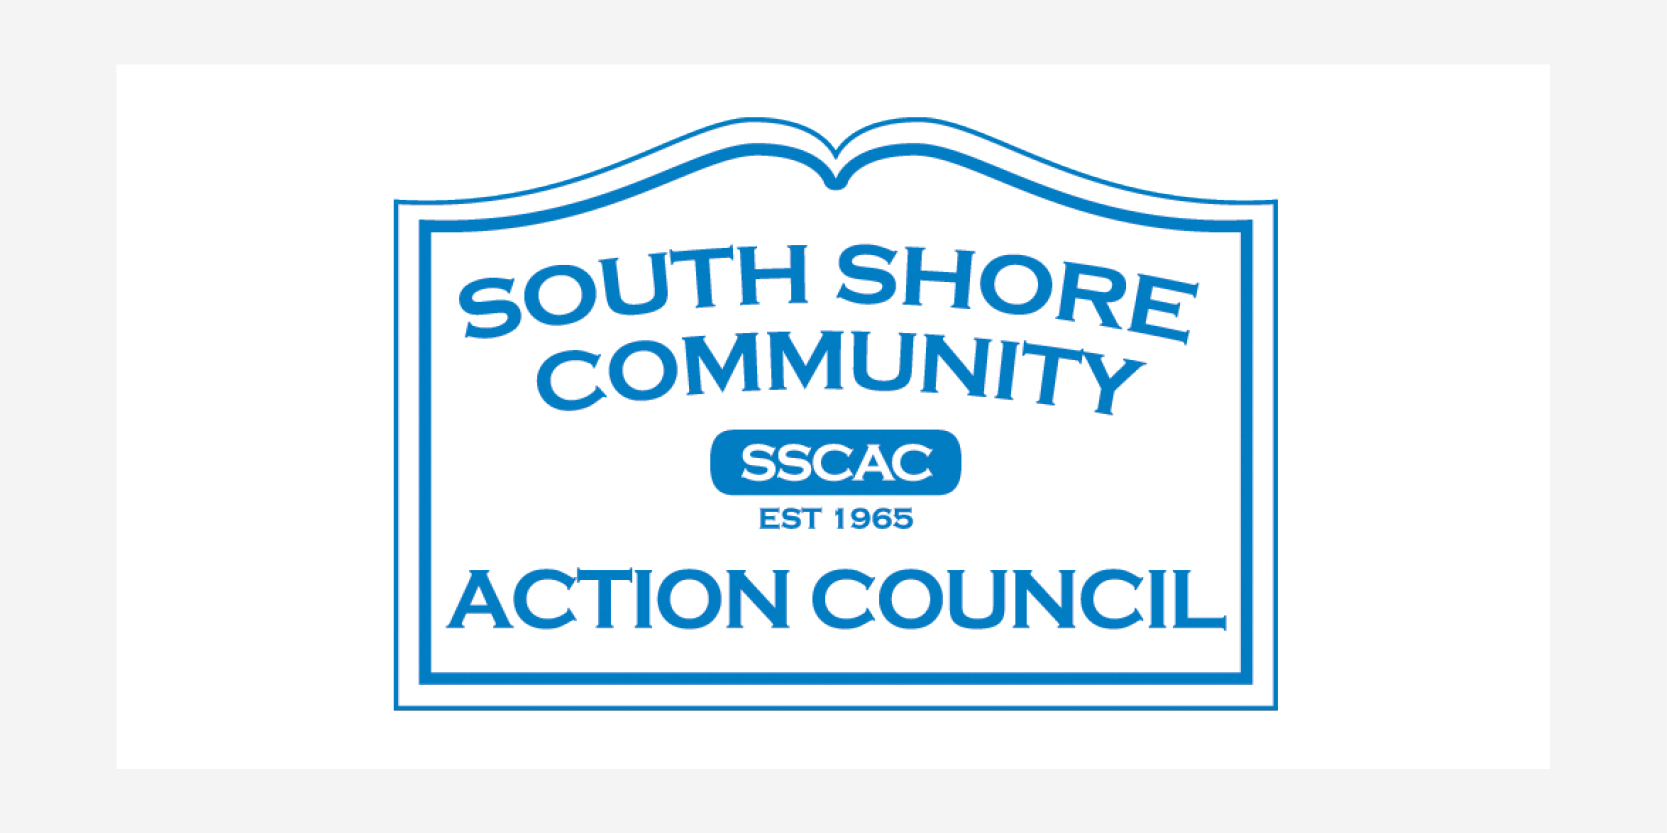 South Shore Community Action Council logo